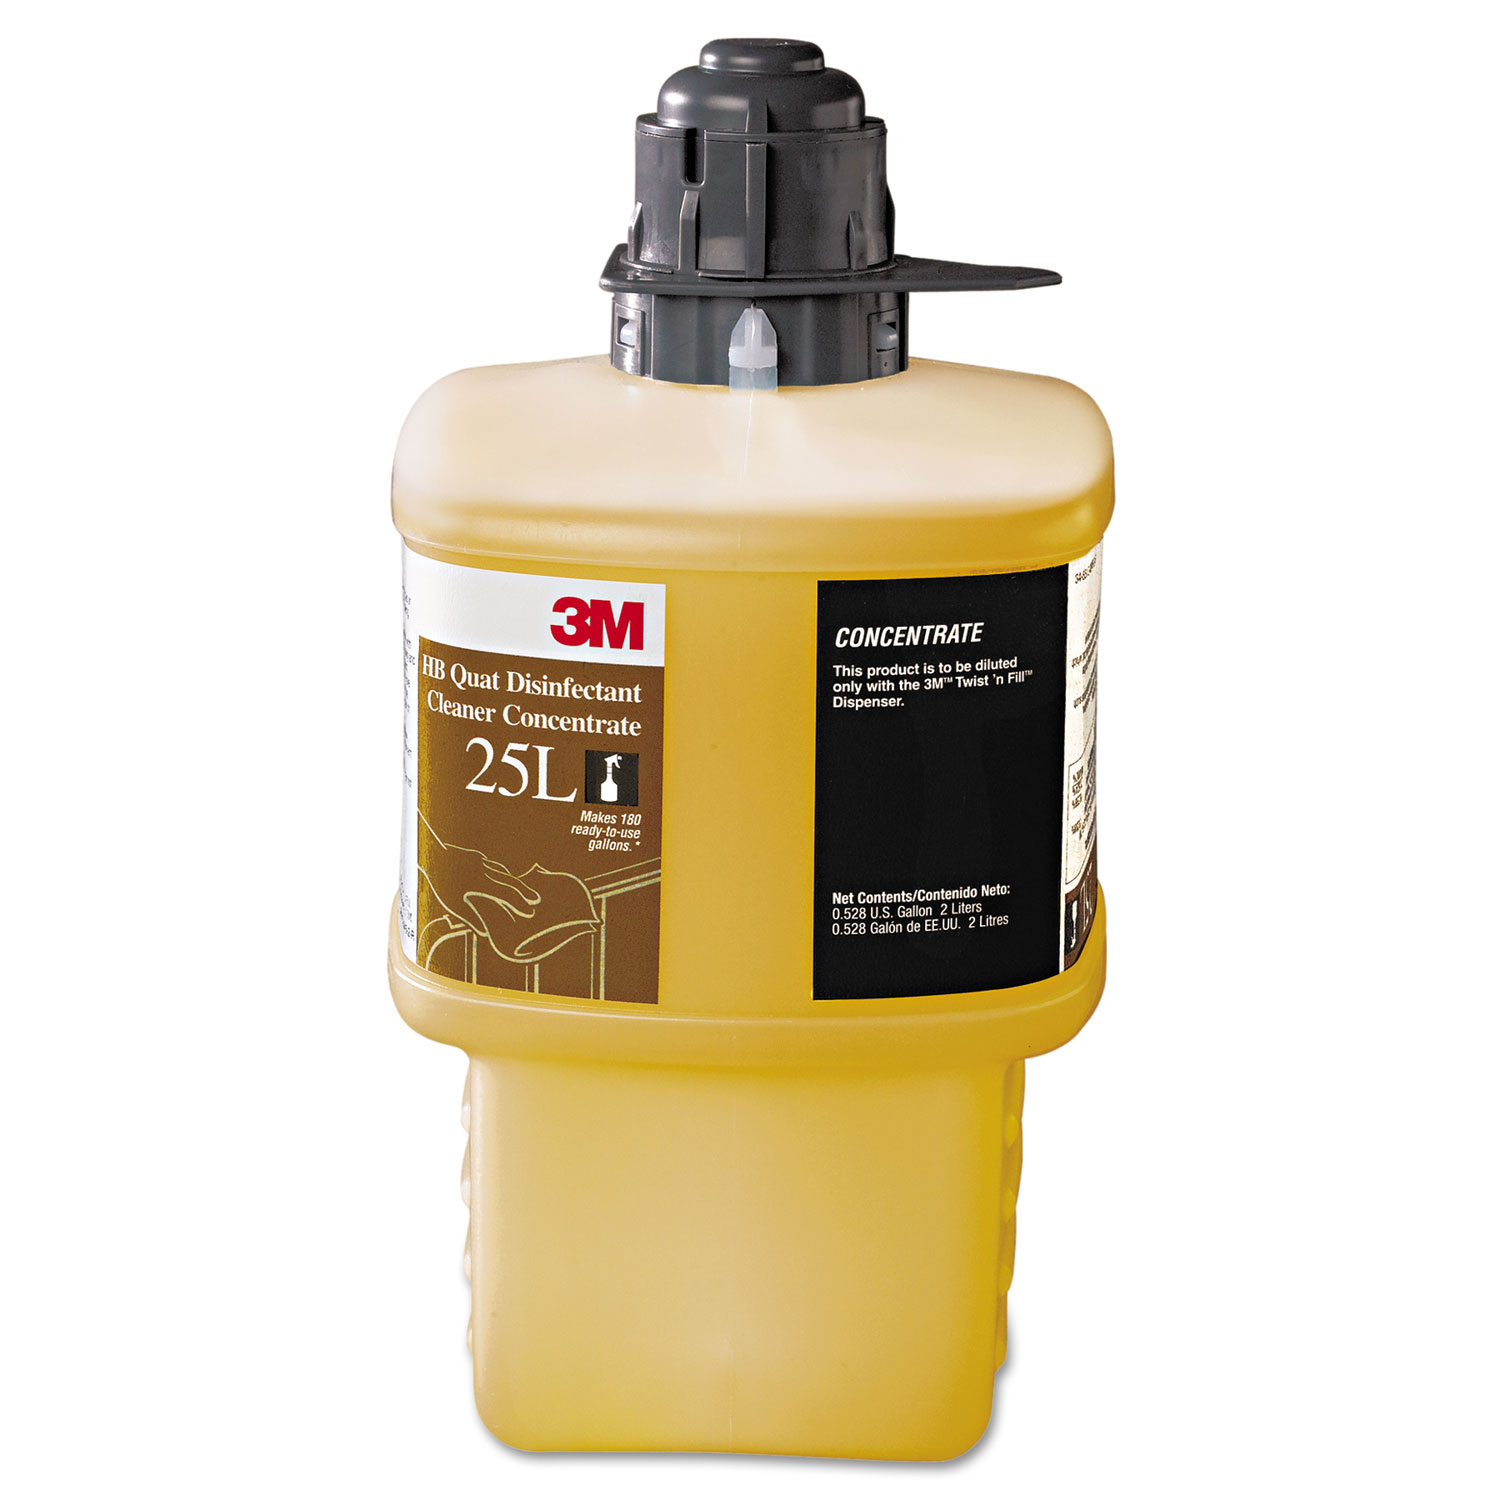  3M 25L HB Quat Disinfectant Cleaner Concentrate, Low Flow, 2,000 mL Bottle, 6/Carton (MMM25L) 